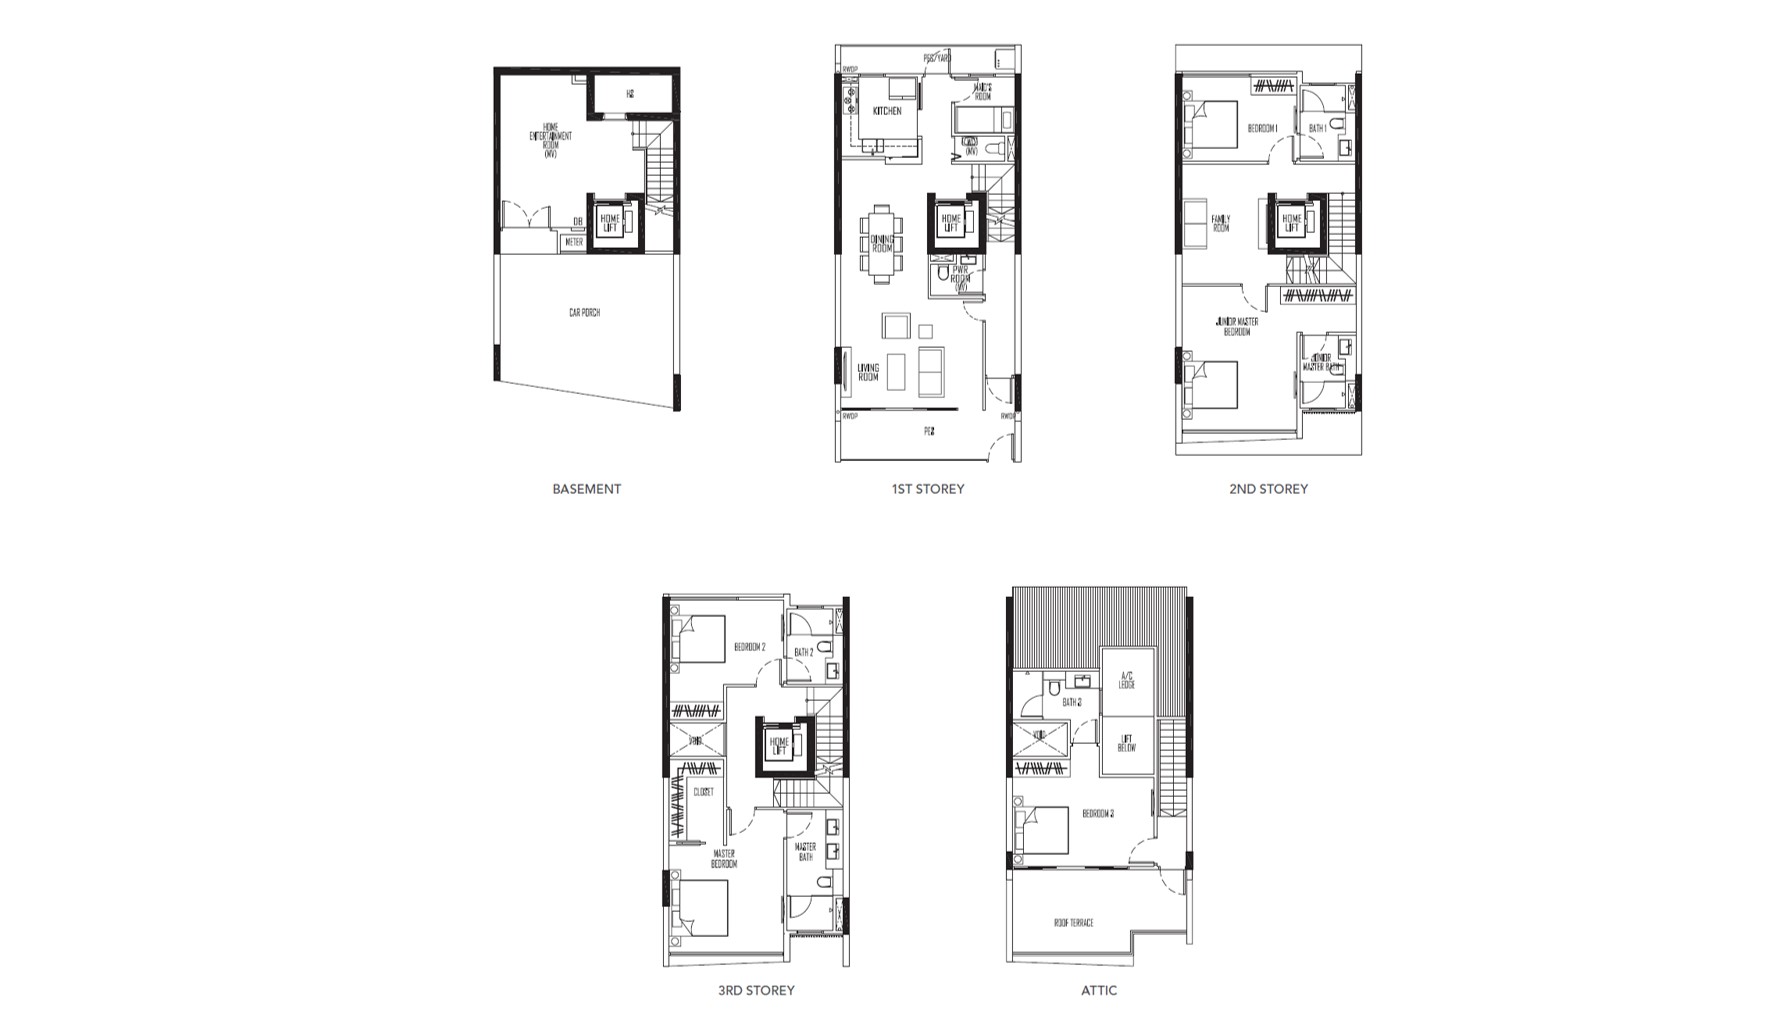 kismiss residences floorplan